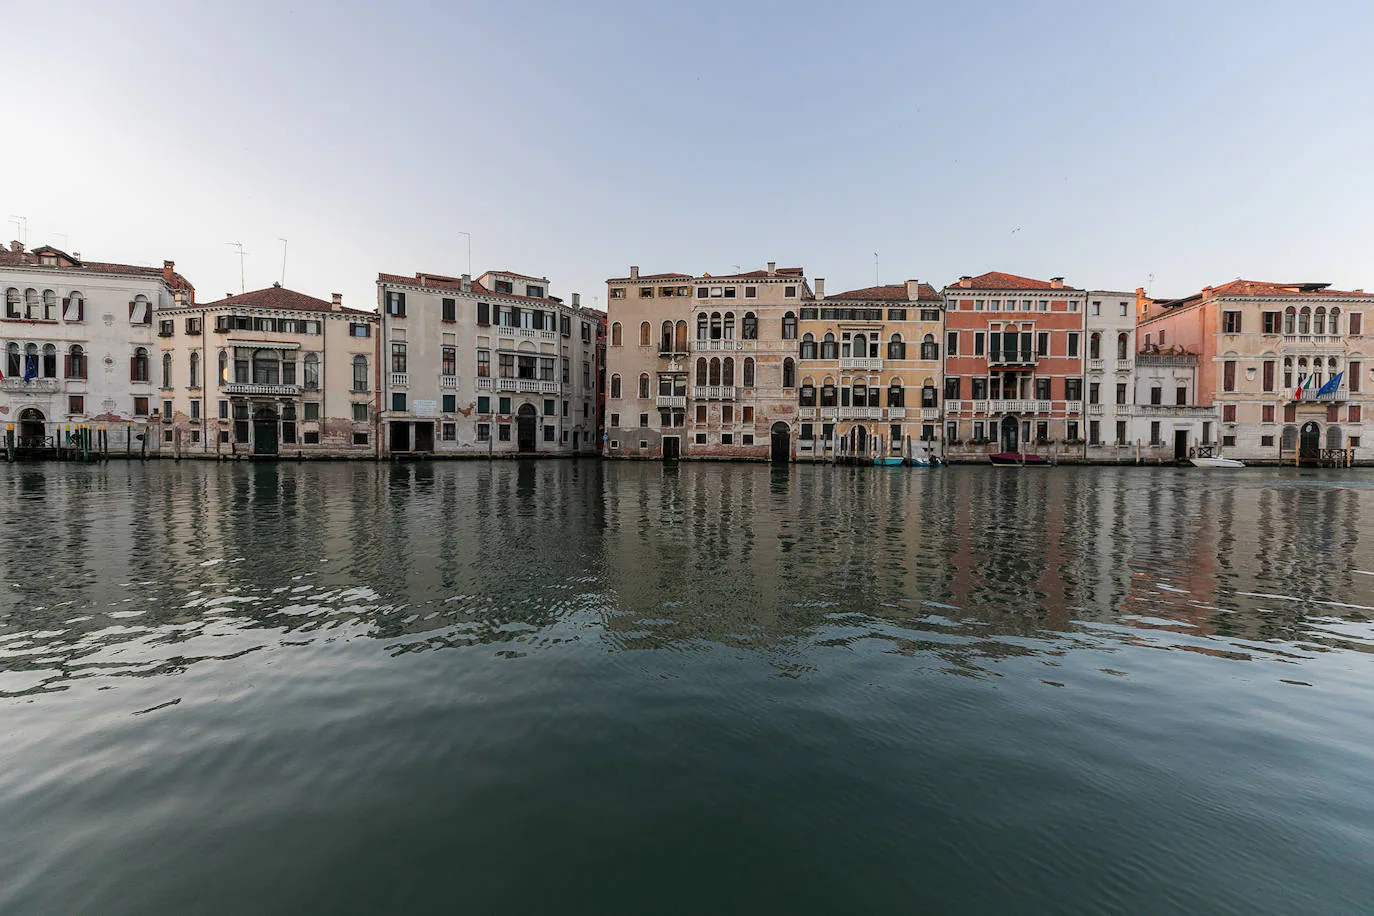 La pandemia del coronavirus dejó imágenes insólitas en una de las capitales turísticas de Europa. Recuperando poco a poco la normalidad, Venecia sigue dejando estampas únicas al atardecer.